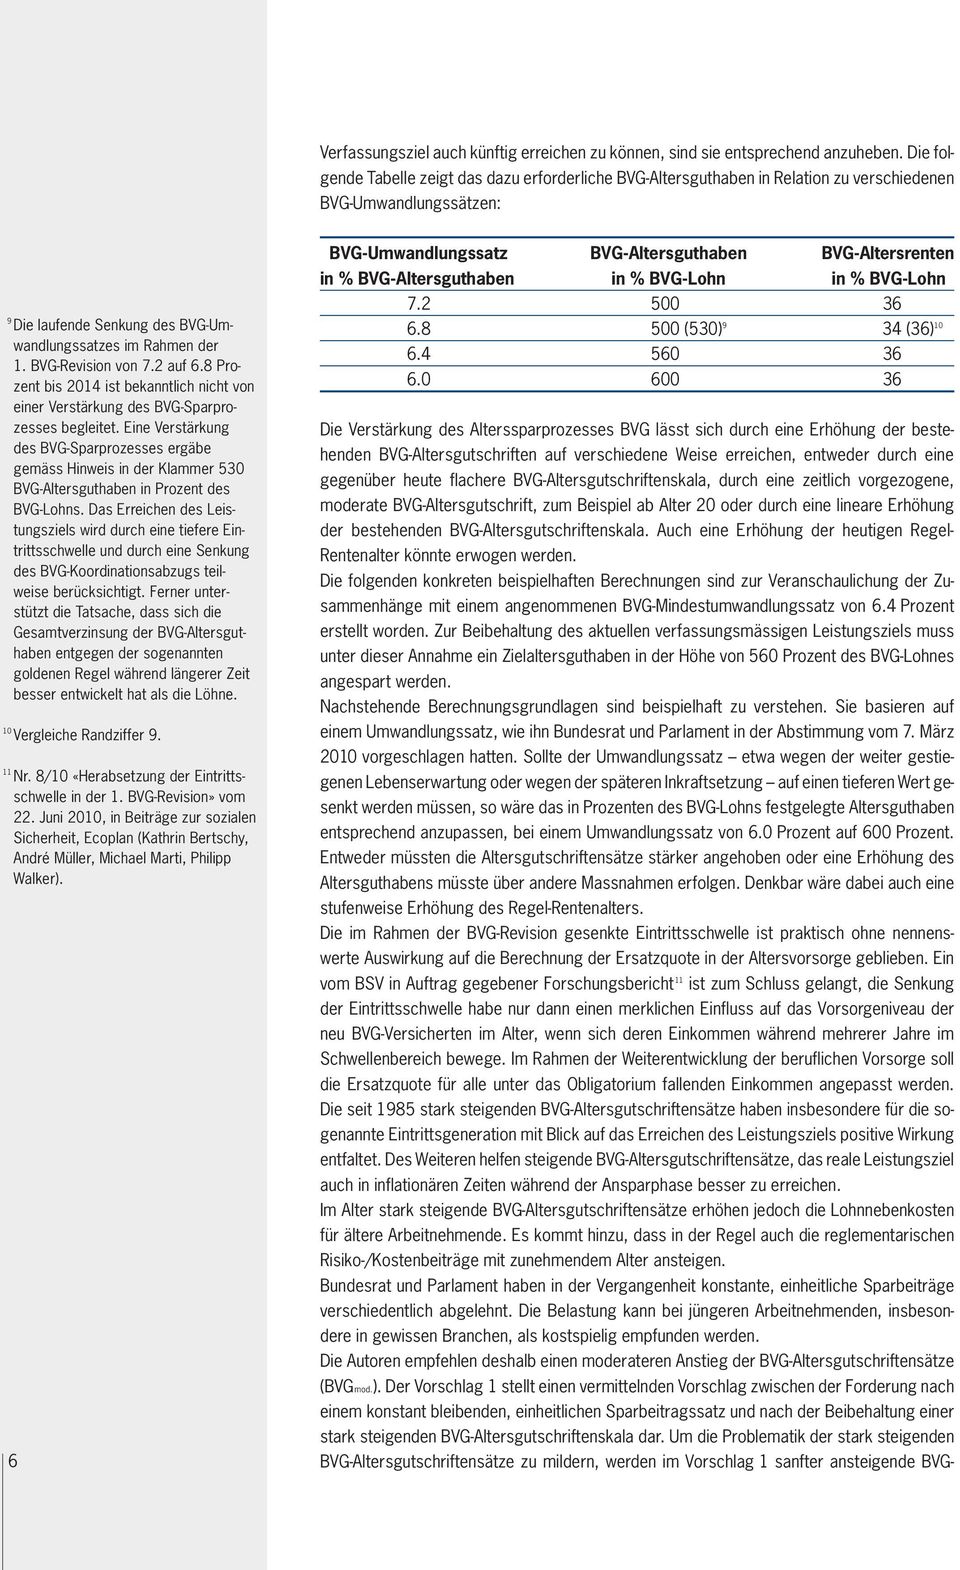 BVG-Revision von 7.2 auf 6.8 Prozent bis 2014 ist bekanntlich nicht von einer Verstärkung des BVG-Sparprozesses begleitet.